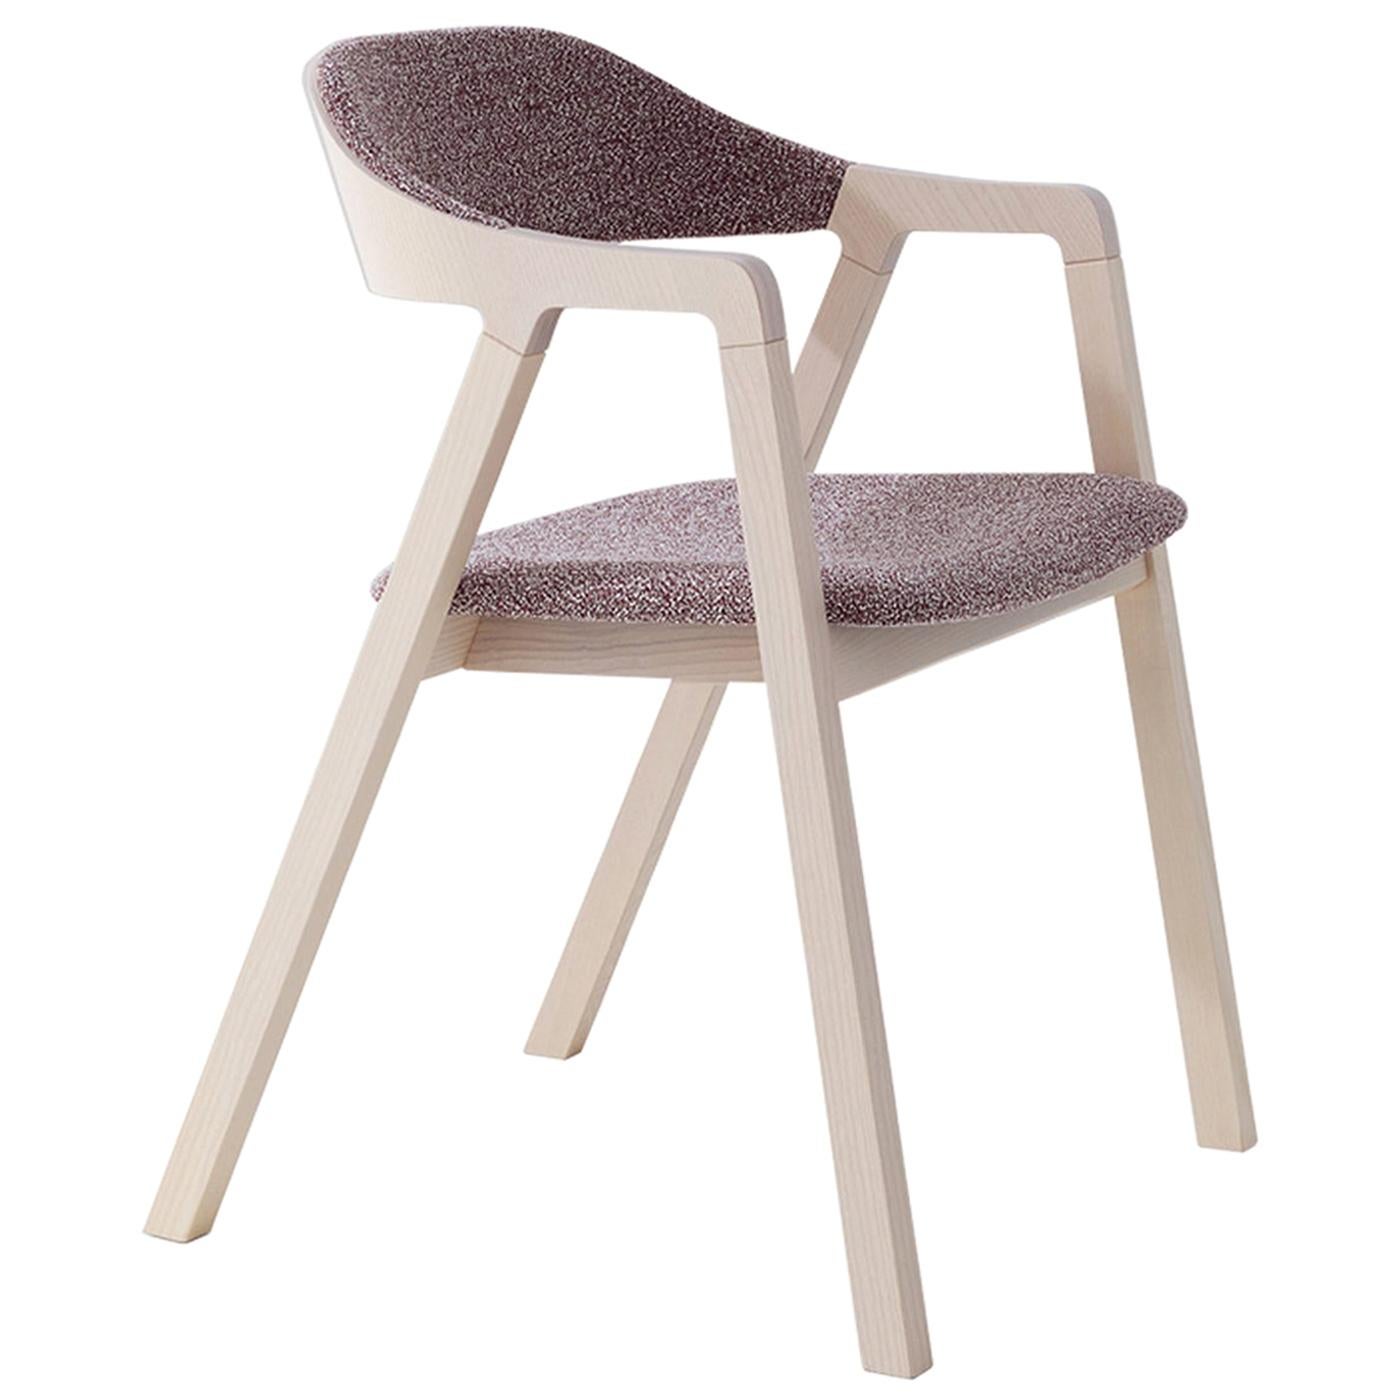 Layer 090 Chair by Michael Geldmacher